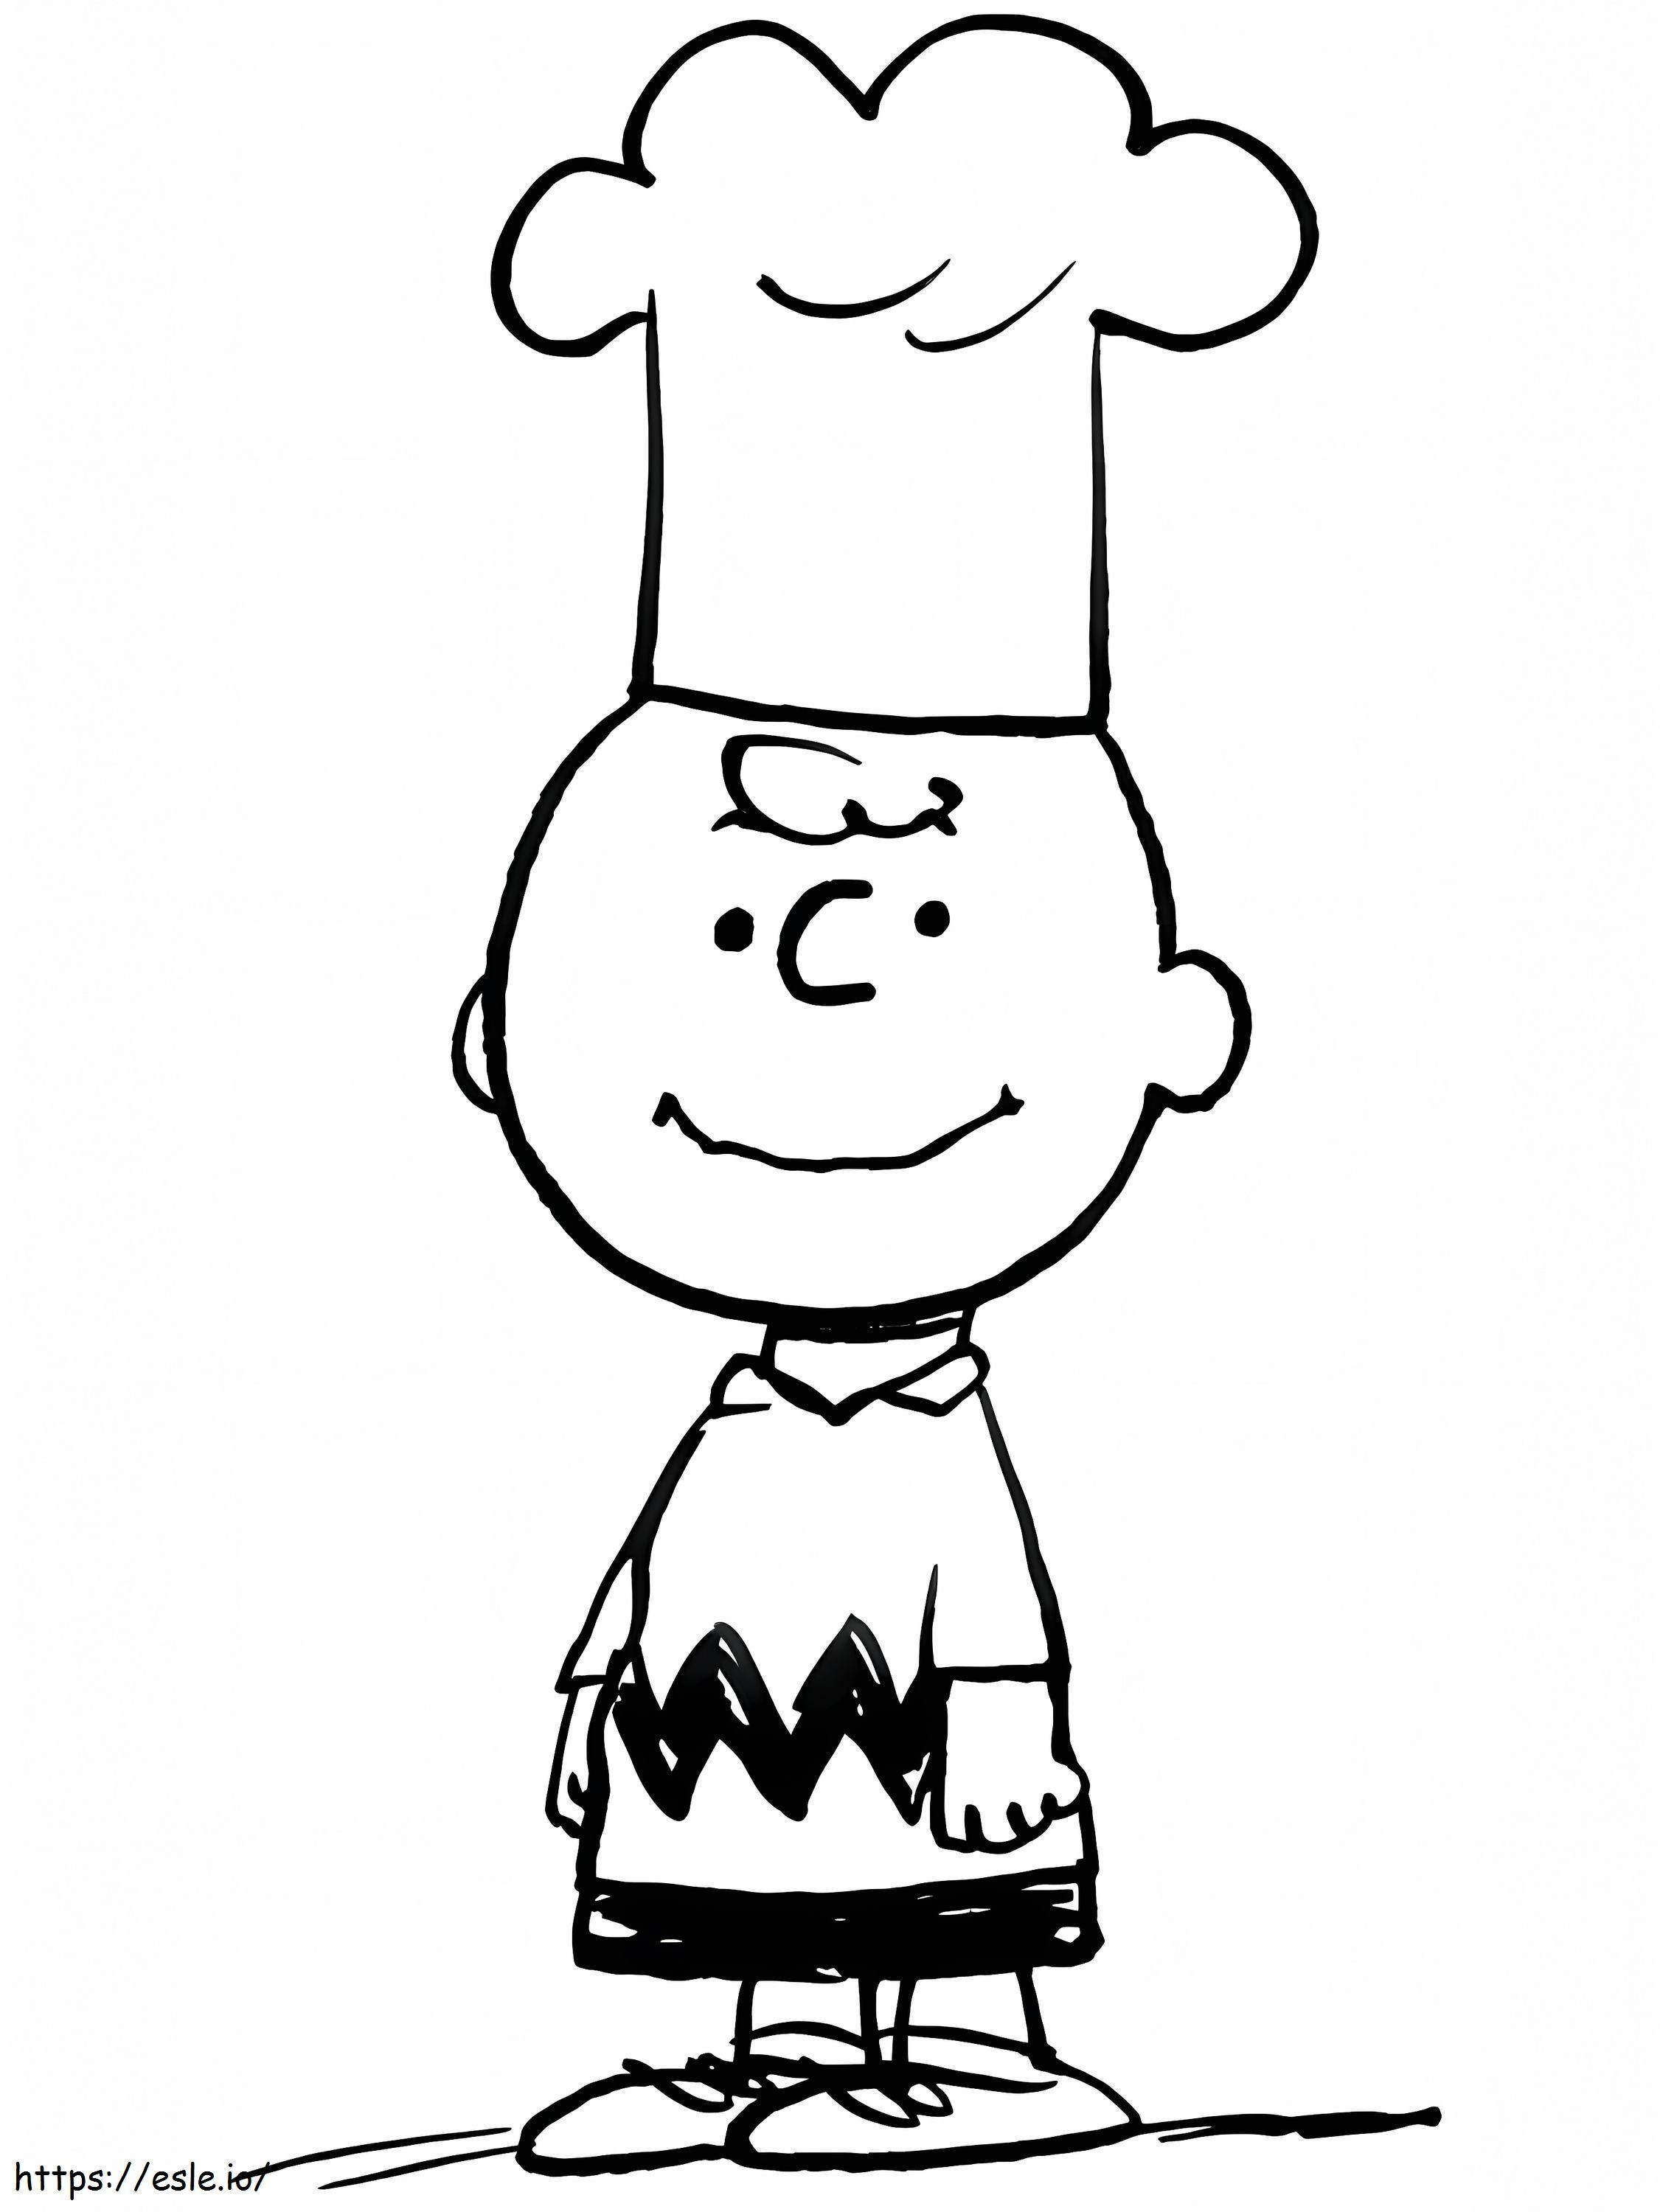 Chefkoch Charlie Brown ausmalbilder